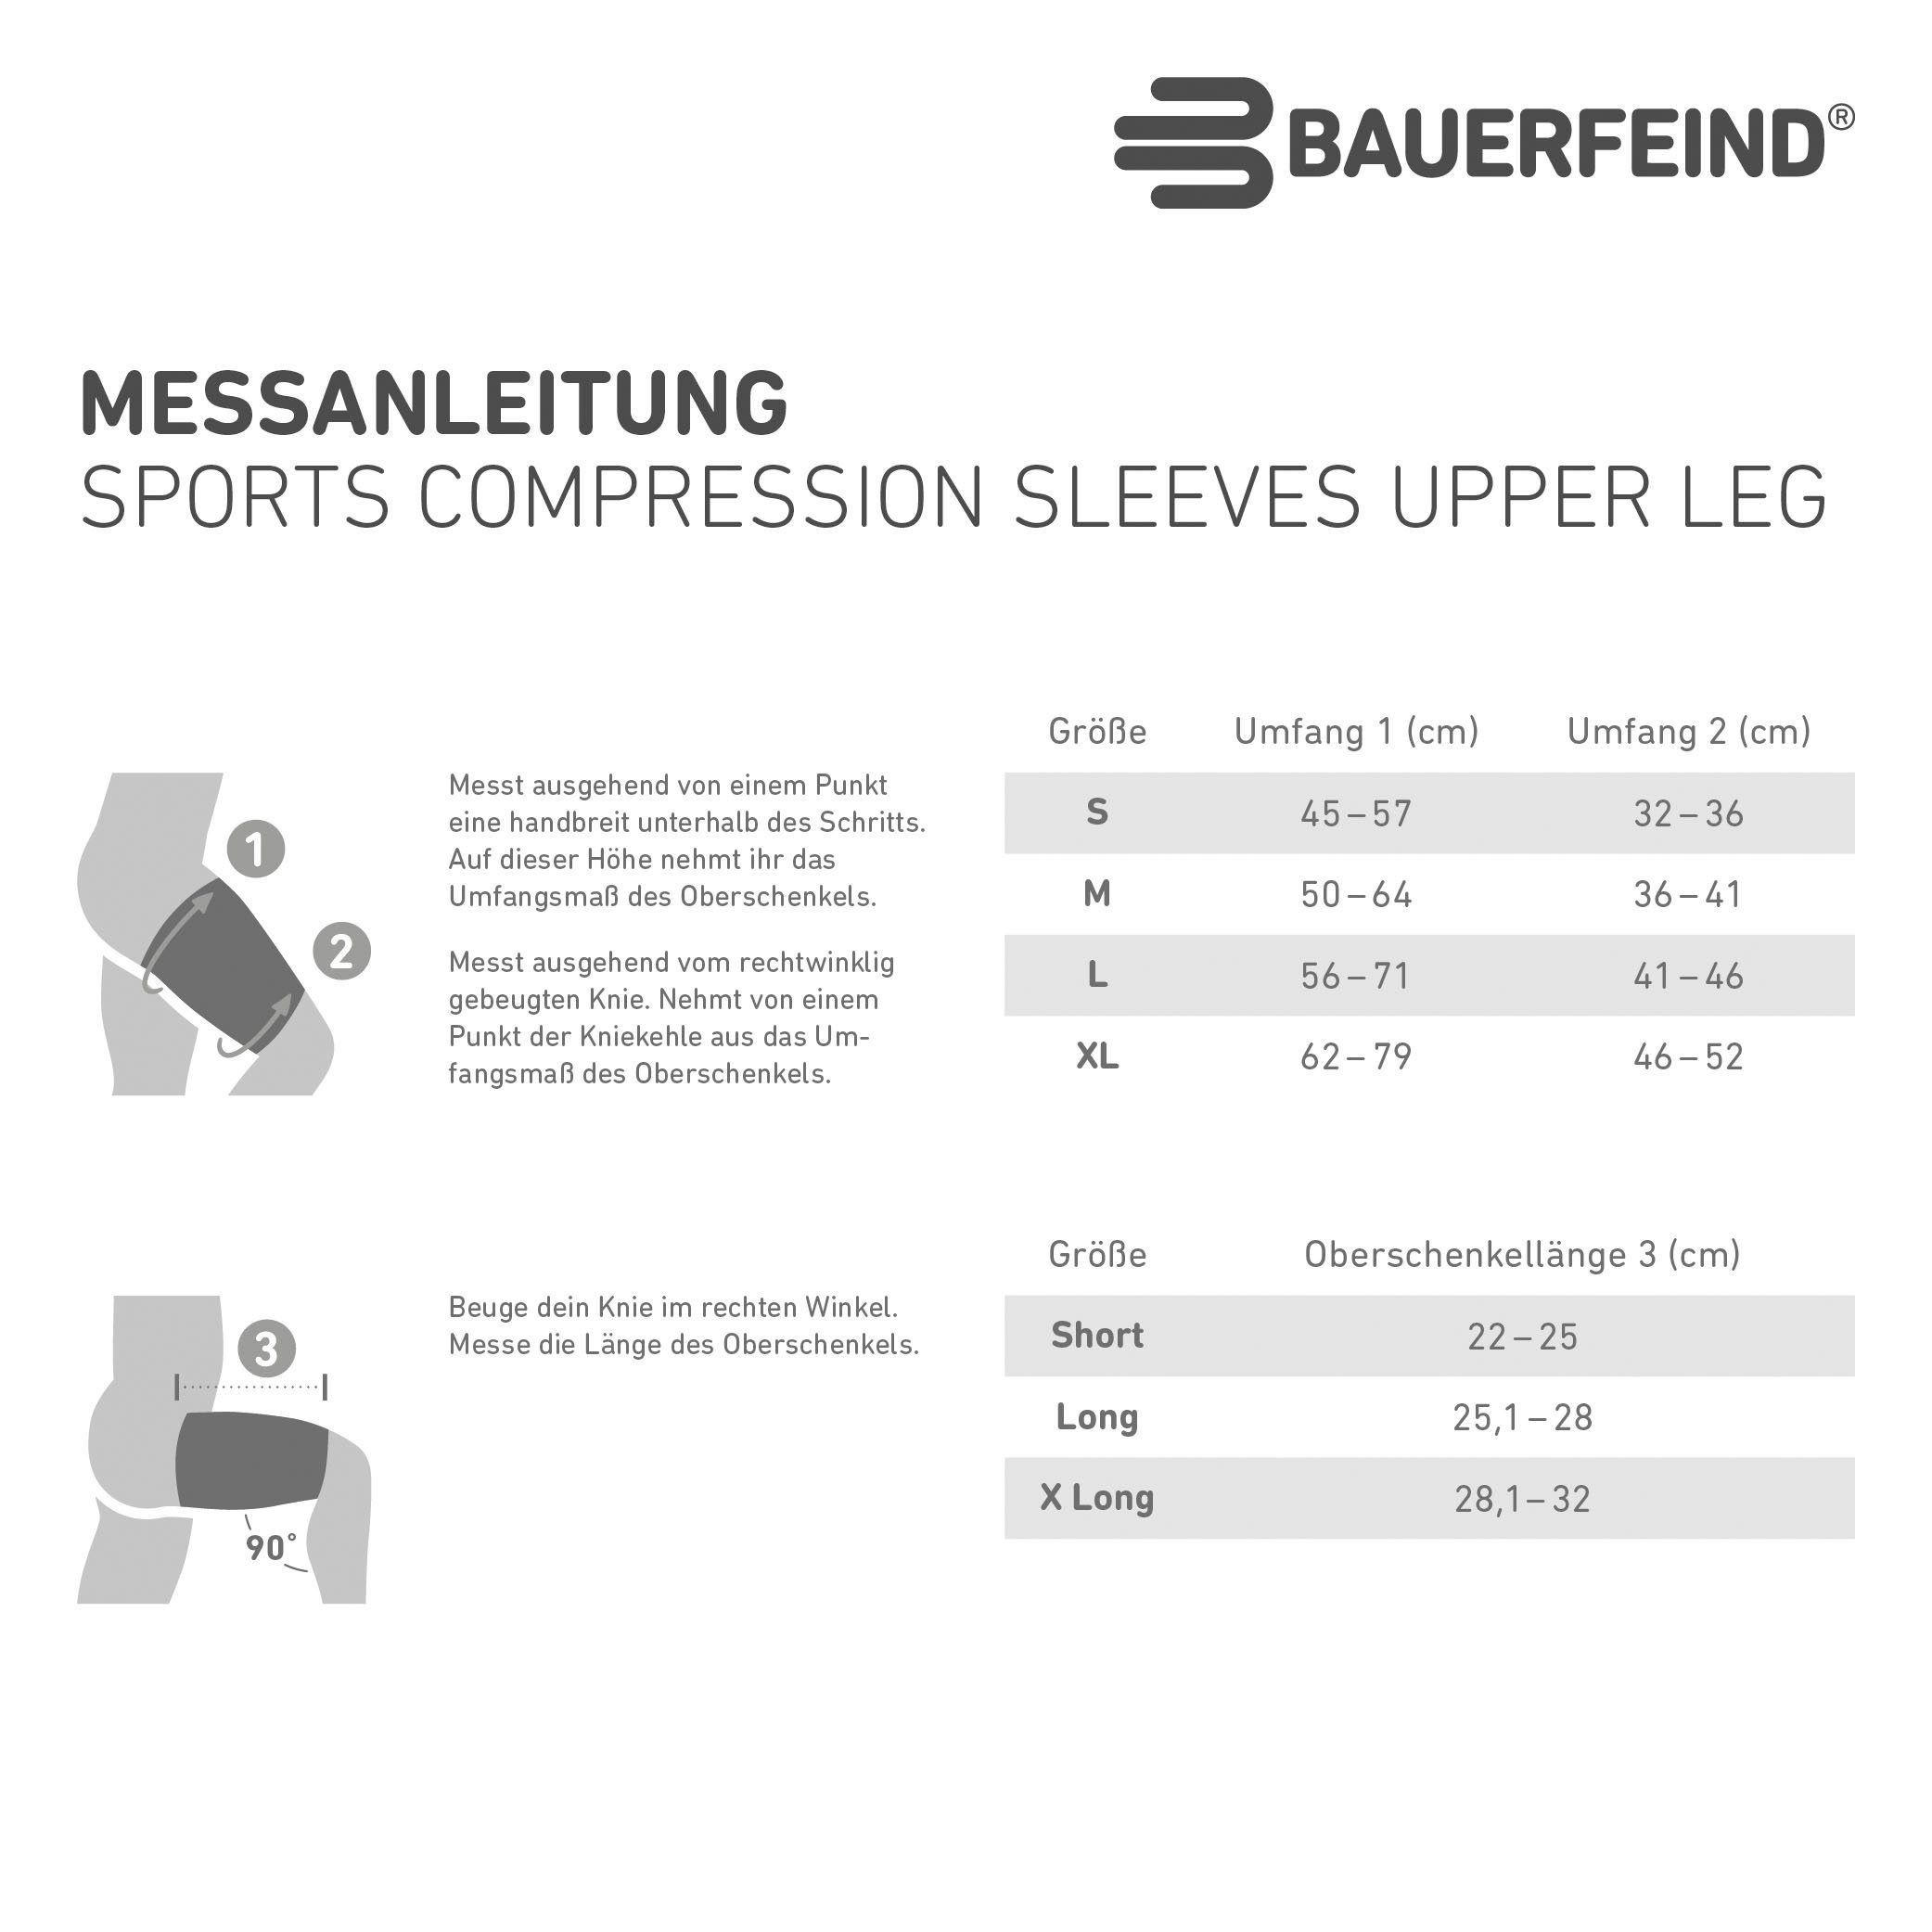 Bauerfeind Bandage Compression Sleeves mit Upper Leg, Kompression schwarz